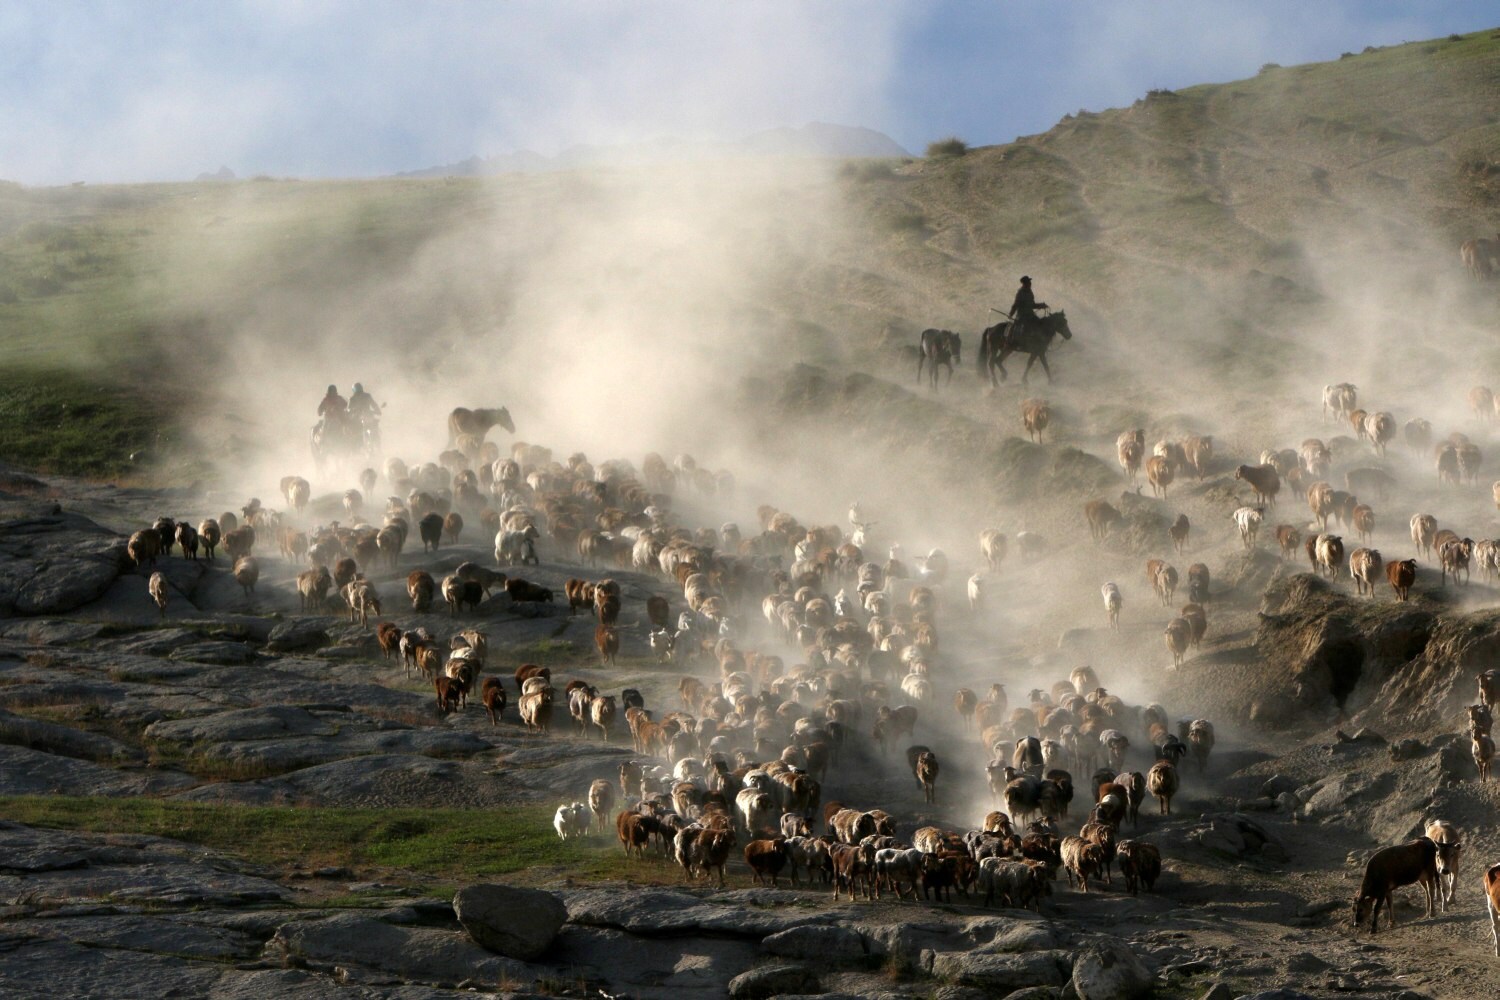 Pastores dirigen una manada de vacas, ovejas y cabras a medida que migran a las áreas de pastoreo de verano en una región montañosa en la Prefectura de Altay, región autónoma de Xinjiang Uighur, China